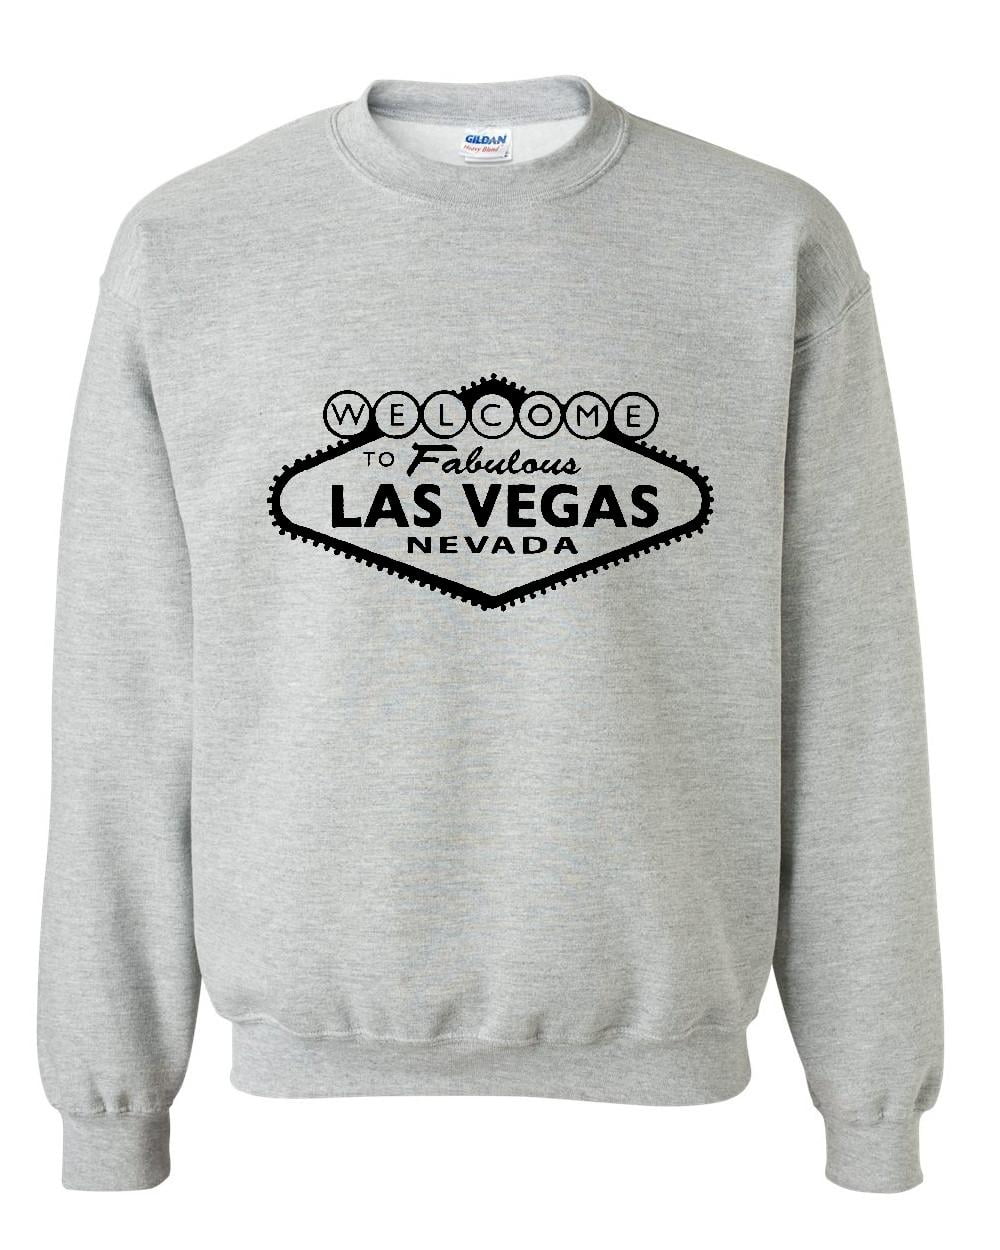 IWPF - Big Girls Hoodies and Sweatshirts - Welcome to Las Vegas Nevada 